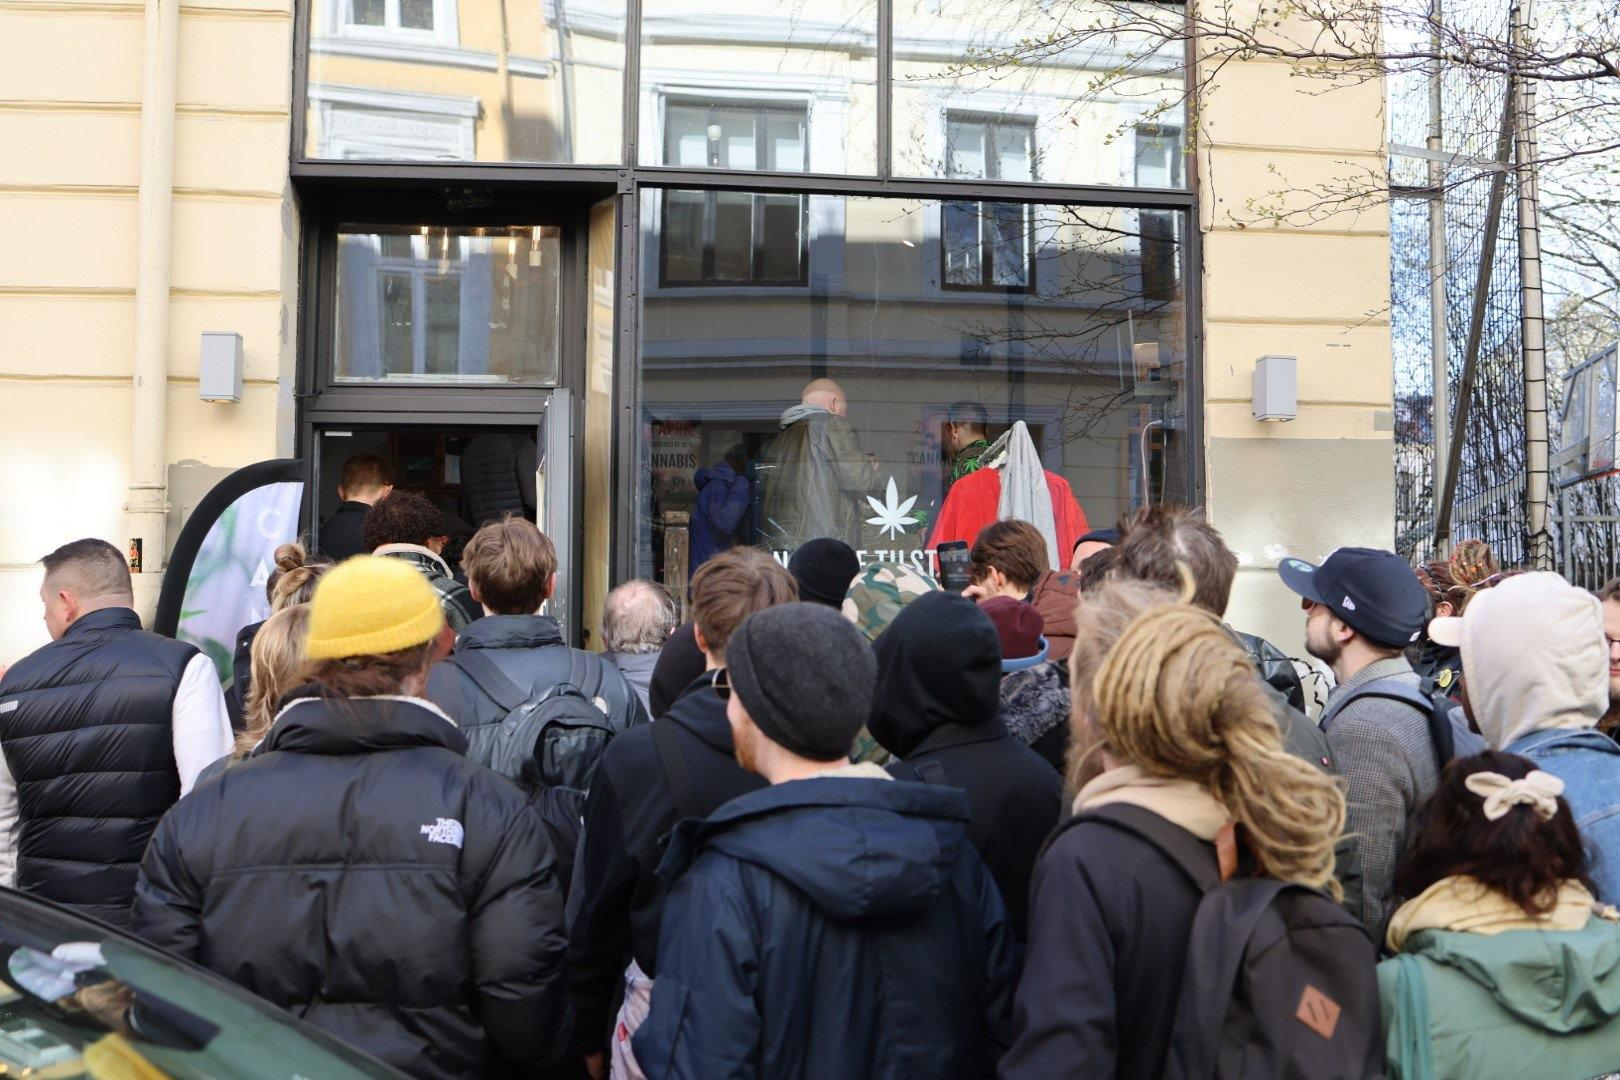 Norras avati esimene kanepikohvik! 5 minutit hiljem sulges politsei asutuse, kohviku eestvedajat ähvardab vanglakaristus